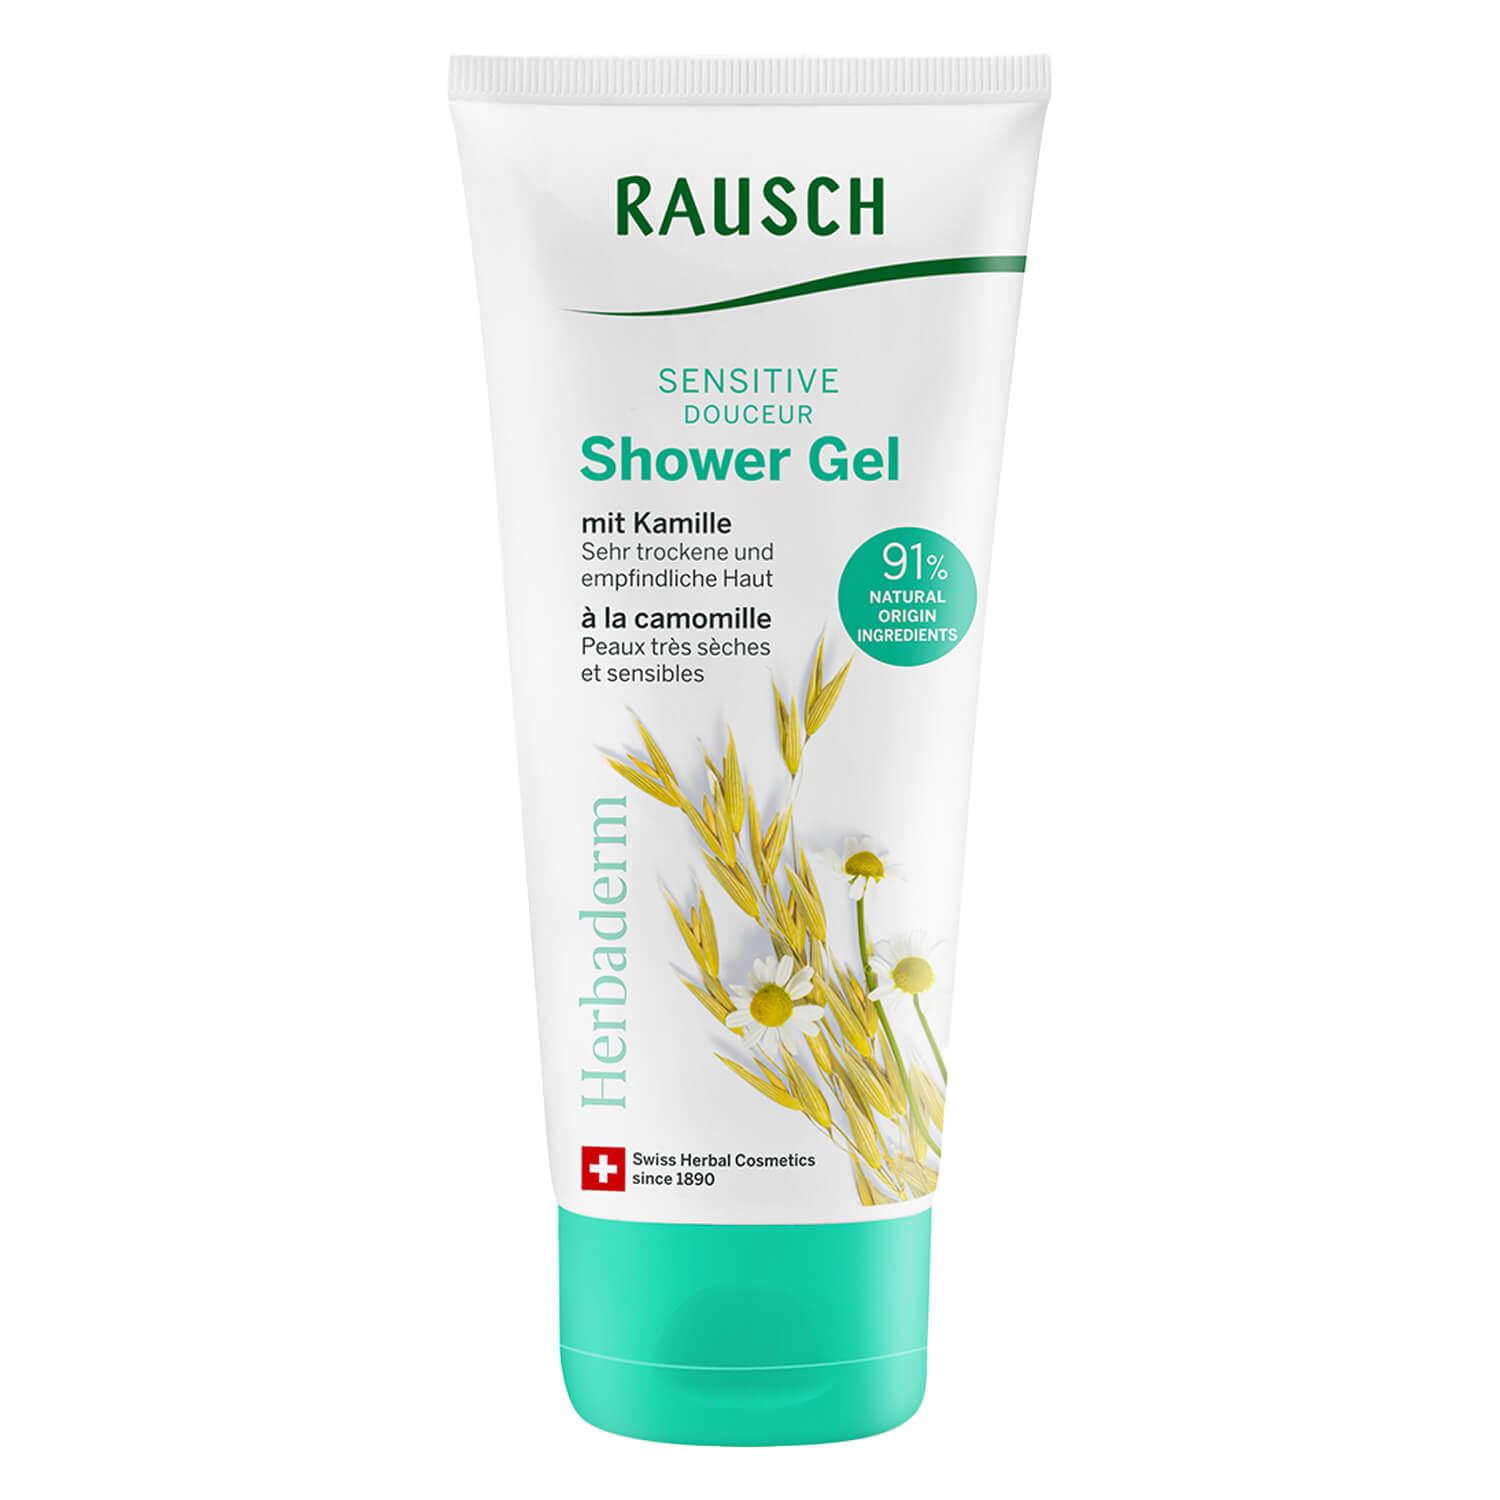 RAUSCH Body - Sensitive Shower Gel mit Kamille